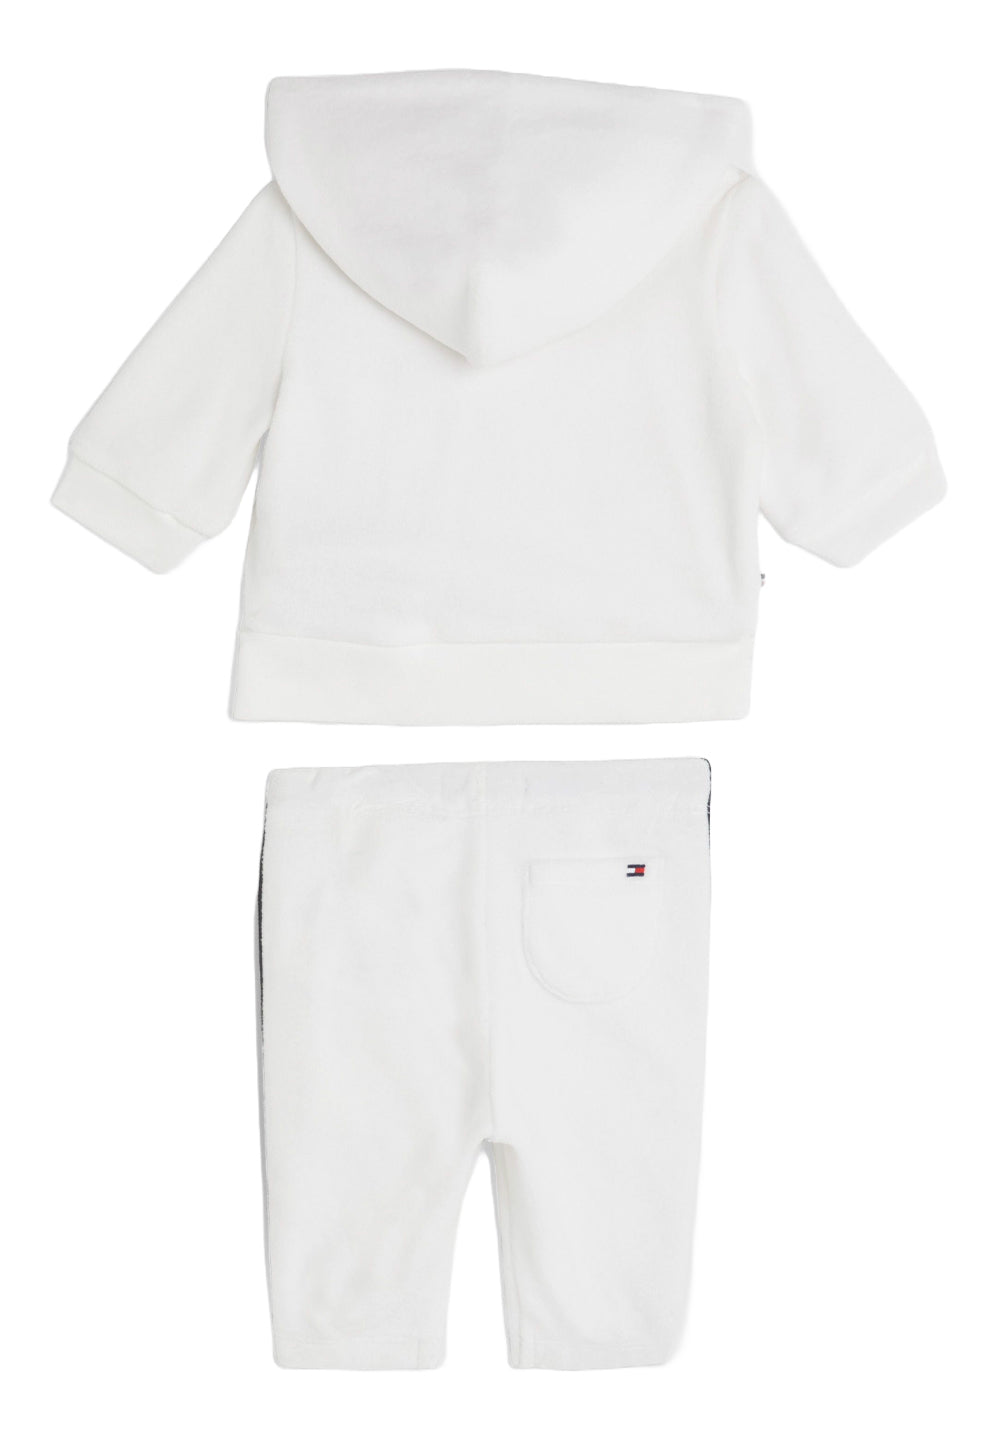 White sweatshirt set for newborns